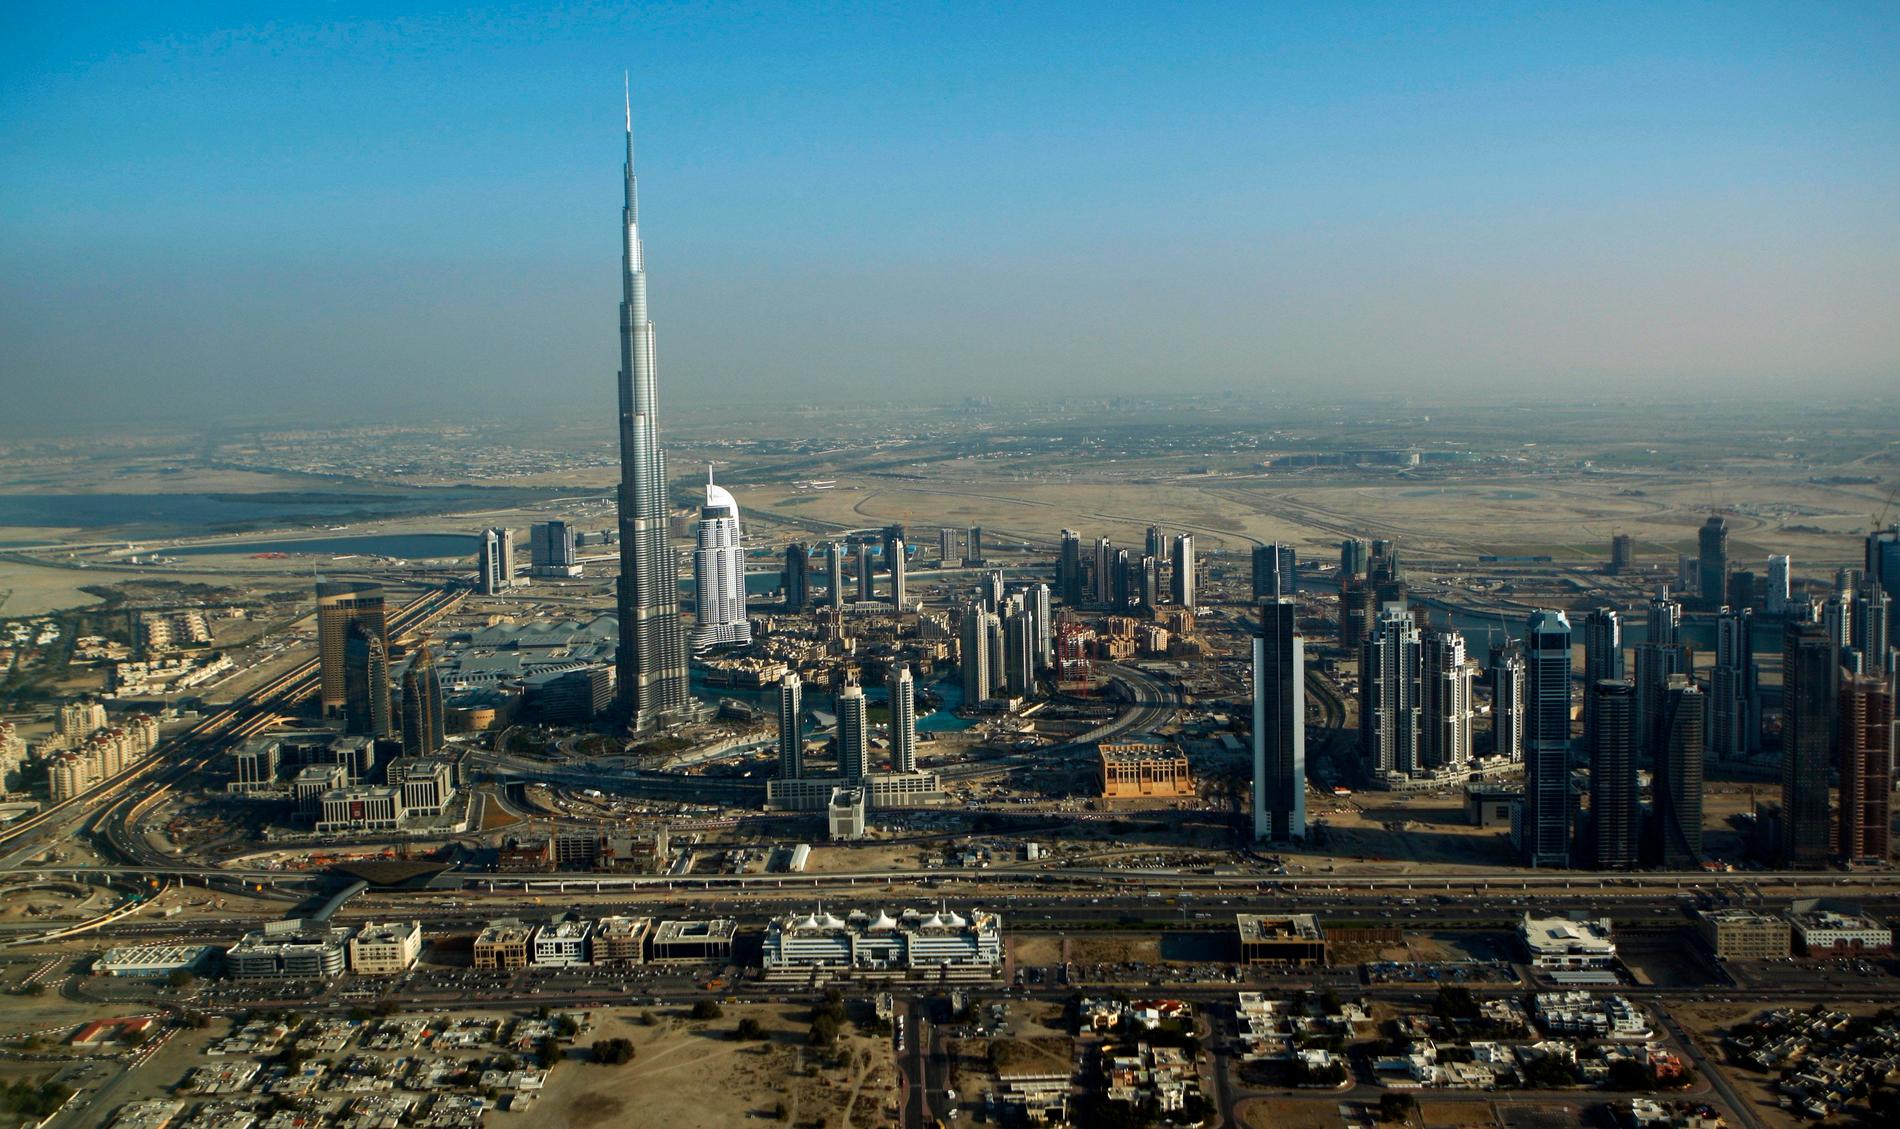 BURJ KHALIFA, DUBAI, FÖREANDE ARABEMIRATEN Burj Khailifa i Dubai är världens högsta byggnad i dag, över 800 meter hög.